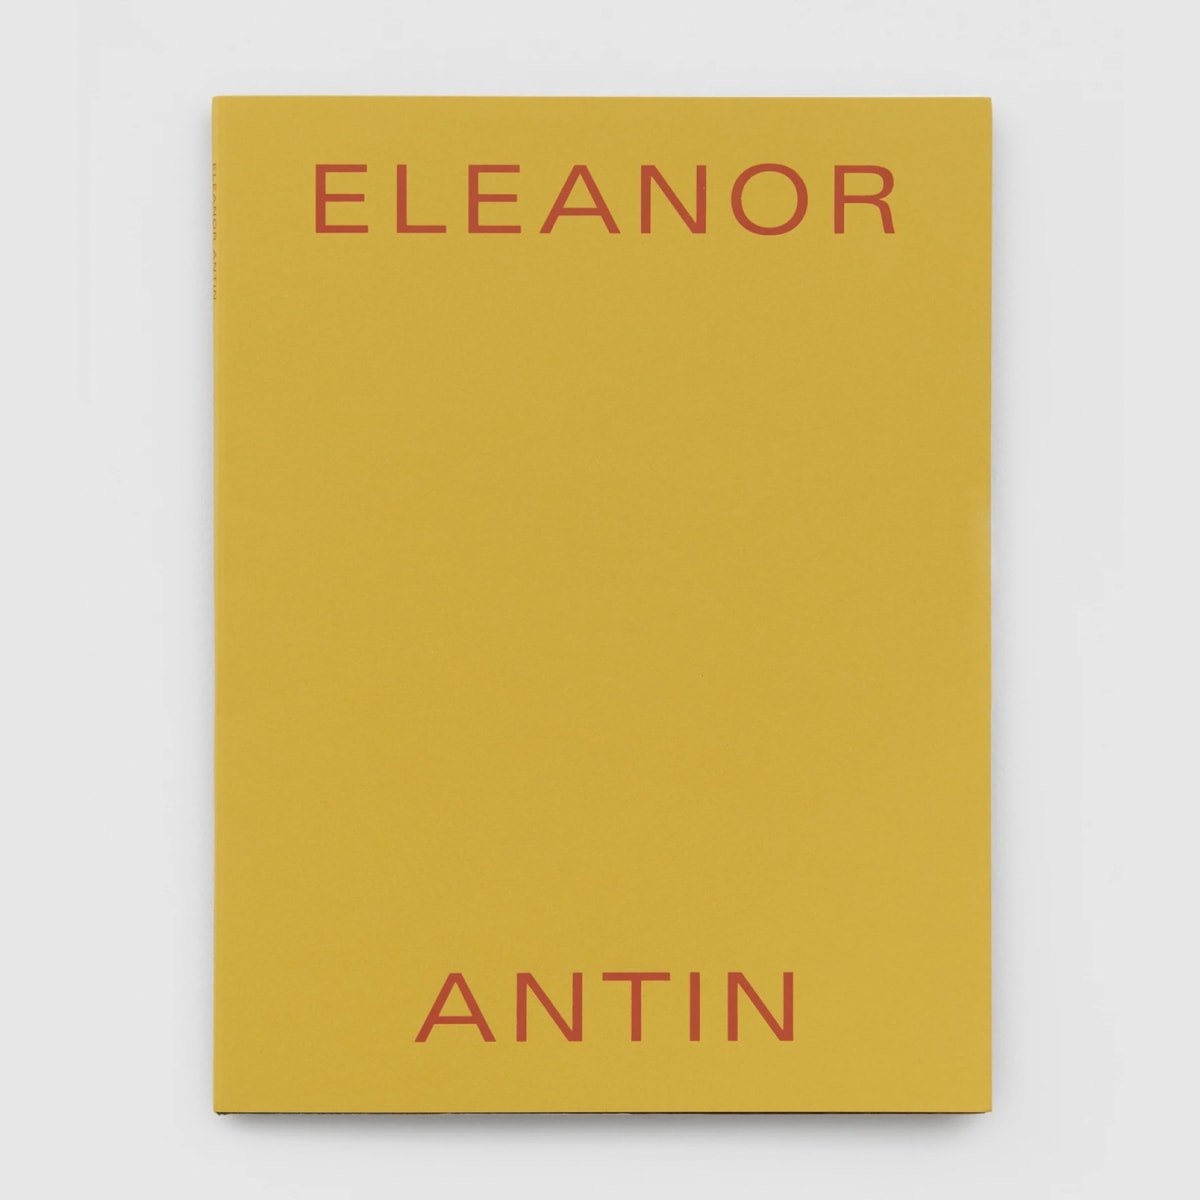 Eleanor ANTIN